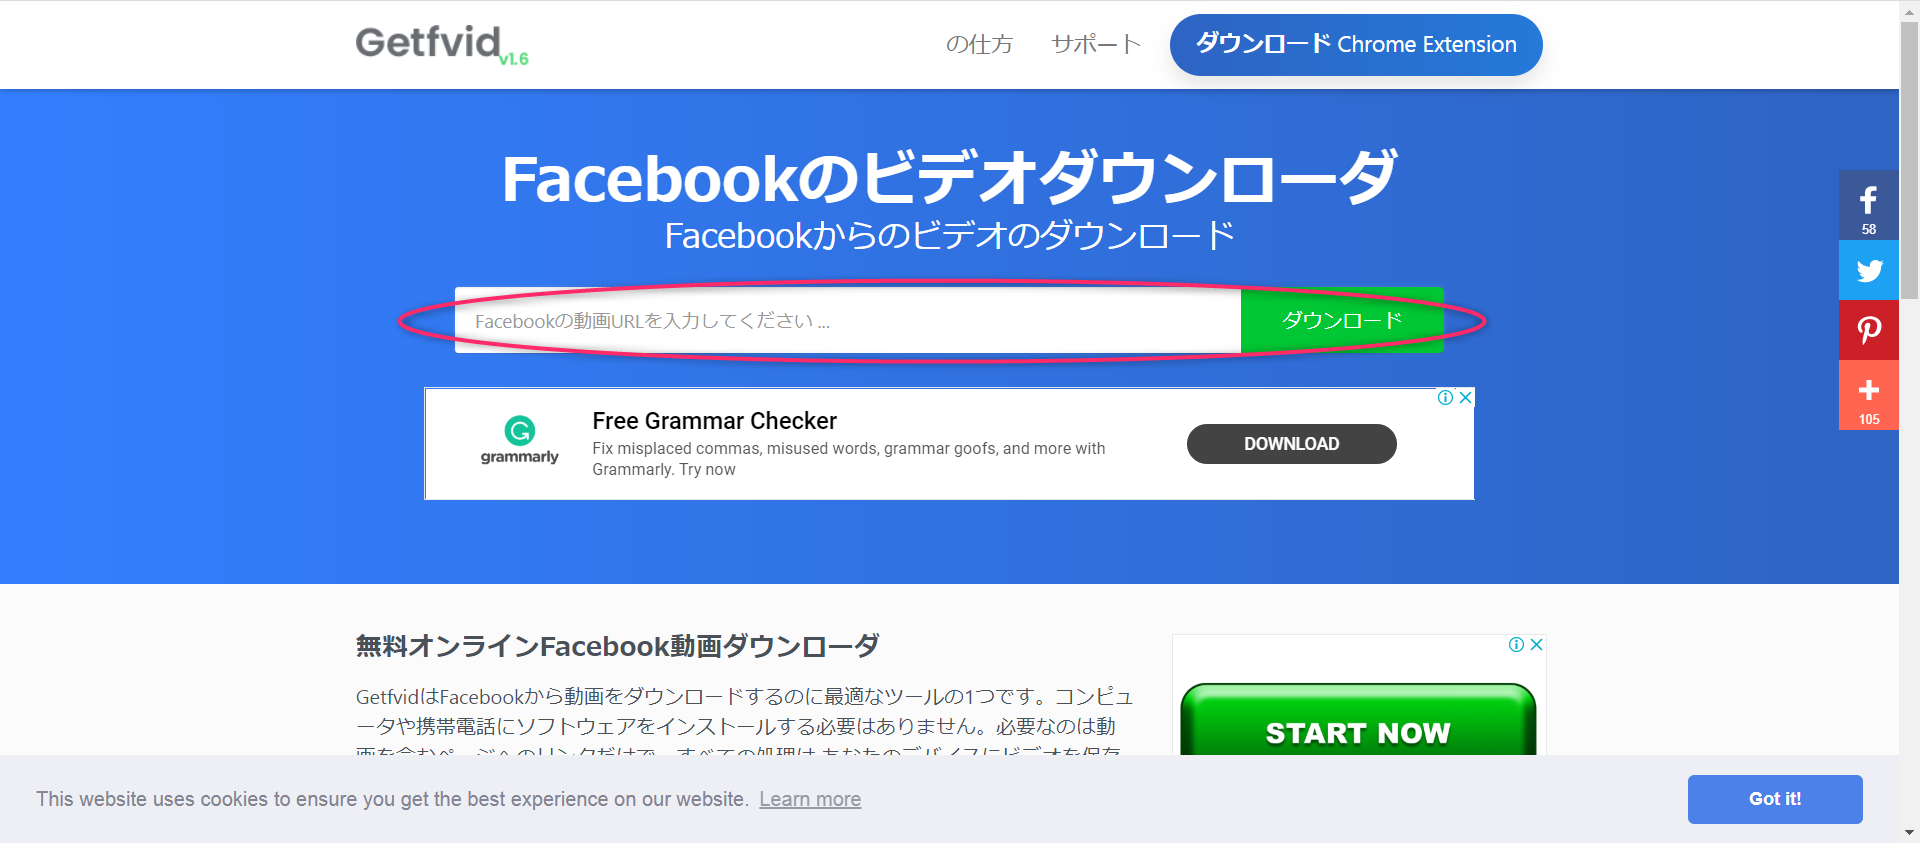 Facebook動画ダウンロード